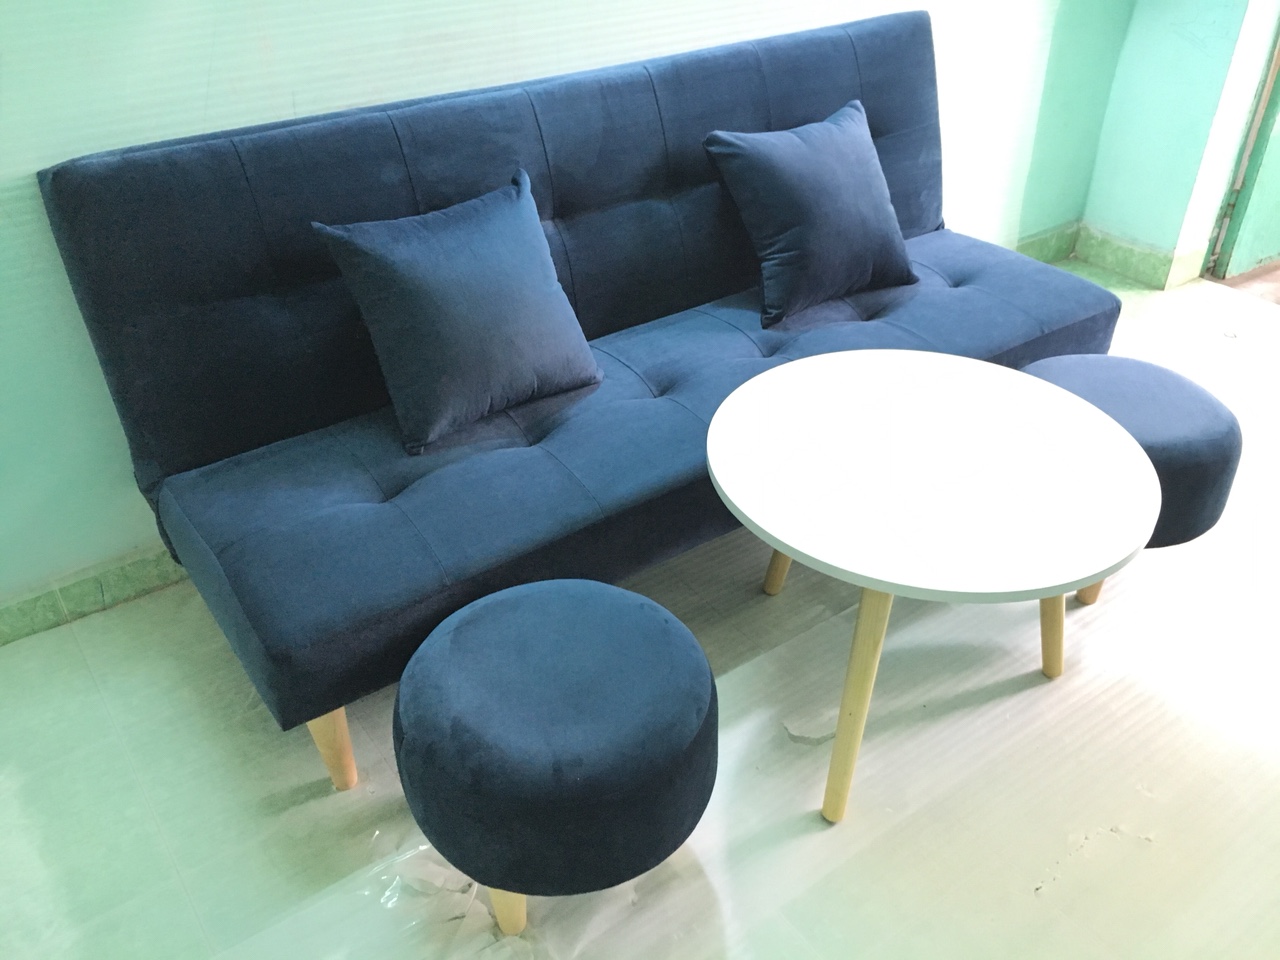 Bộ set sofa bed xanh dương đậm nhung Gvs2DvsB XDDN, sofa giường phòng khách